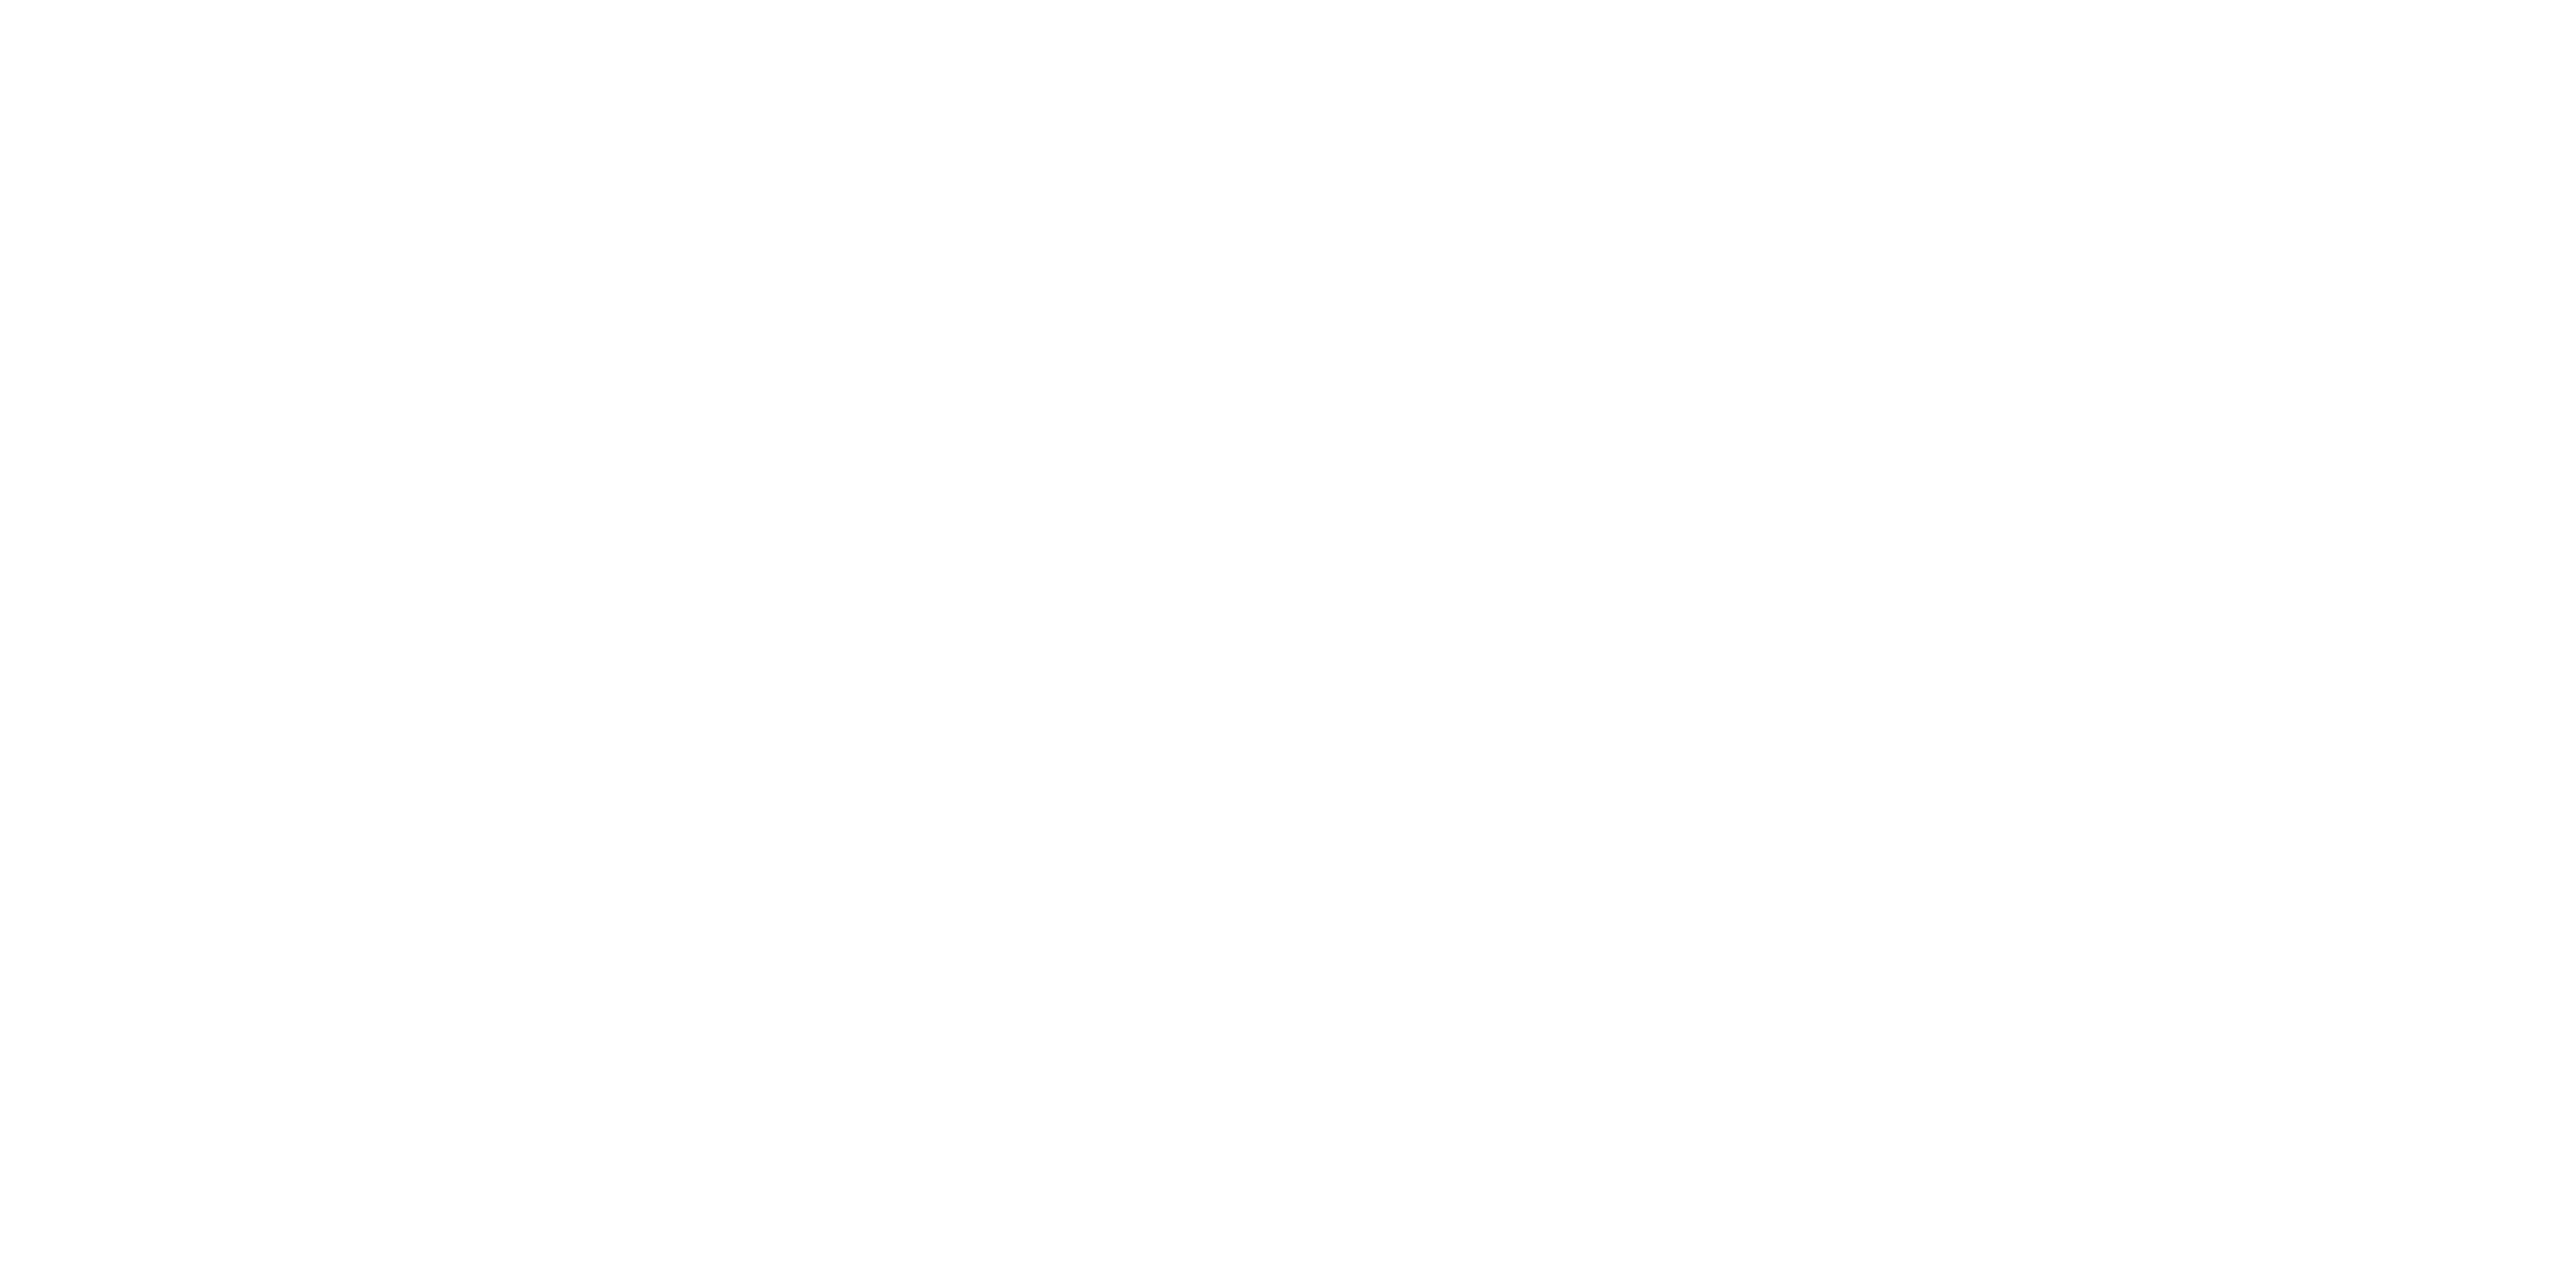 Public Discourses of Dementia logo